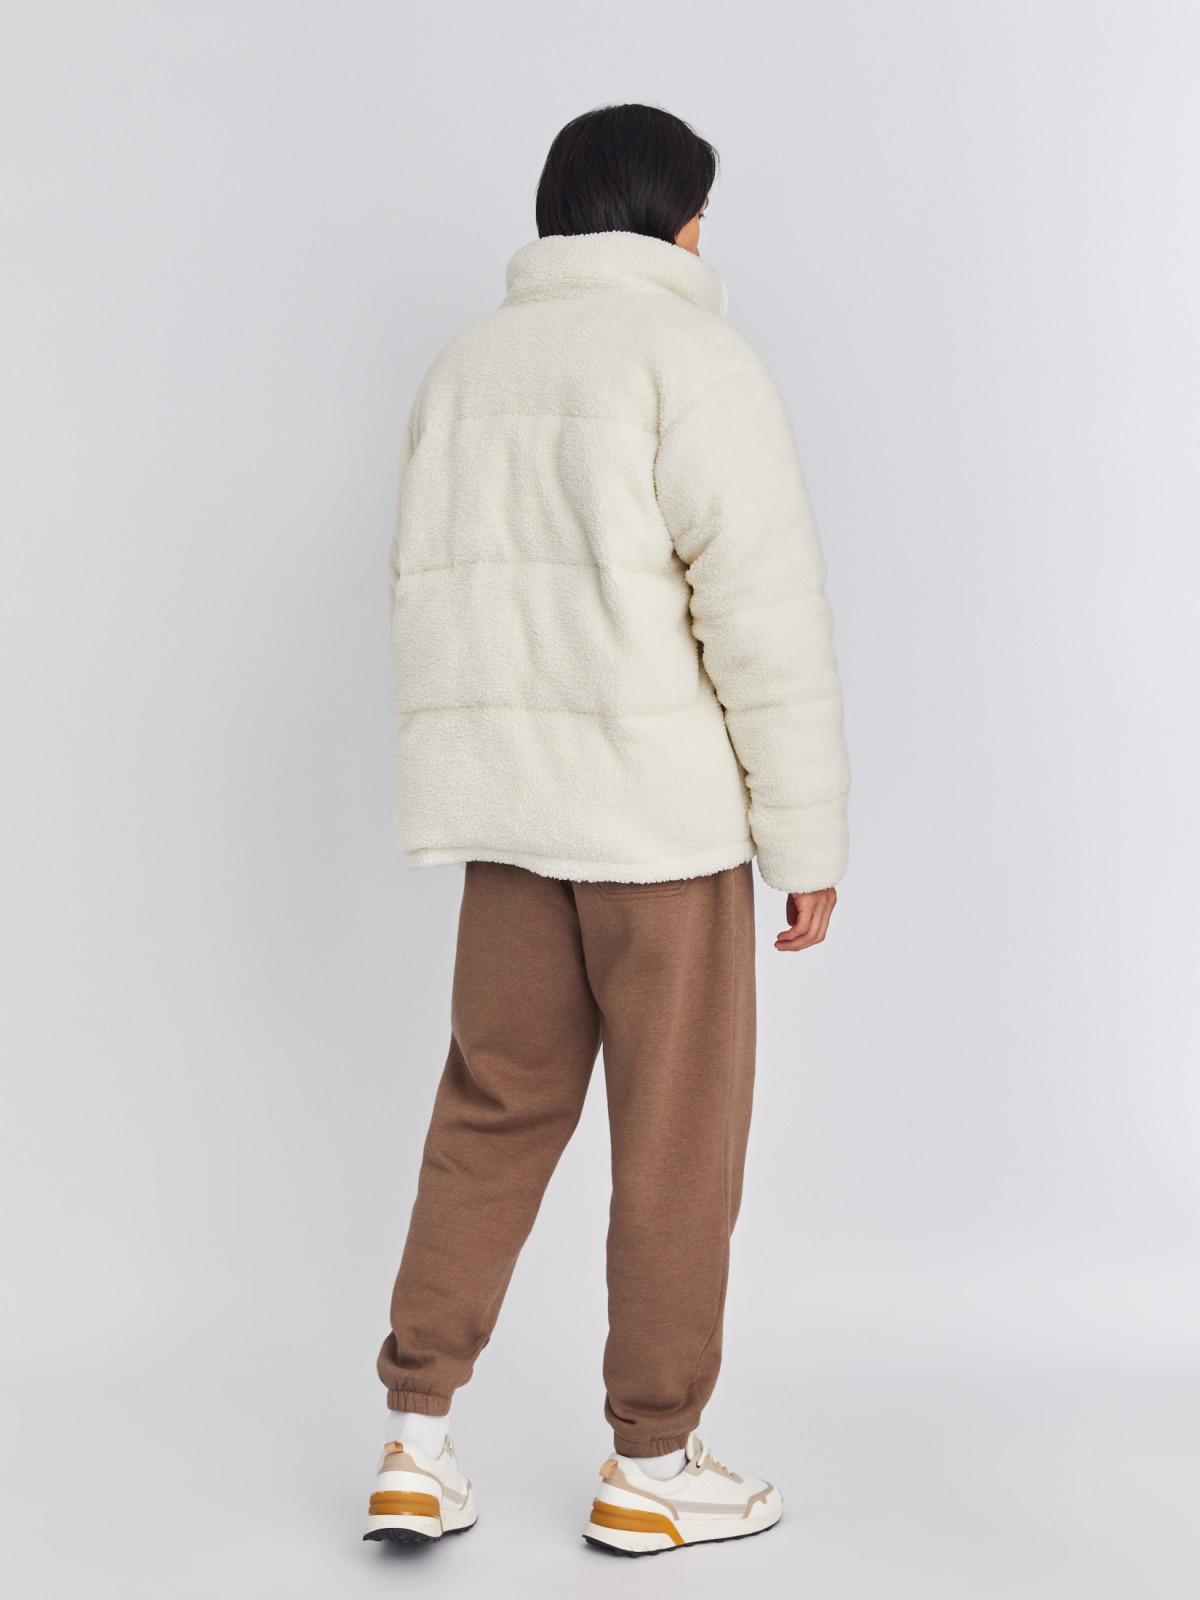 Тёплая куртка из экомеха с воротником-стойкой zolla 013425502024, цвет молоко, размер S/M - фото 6